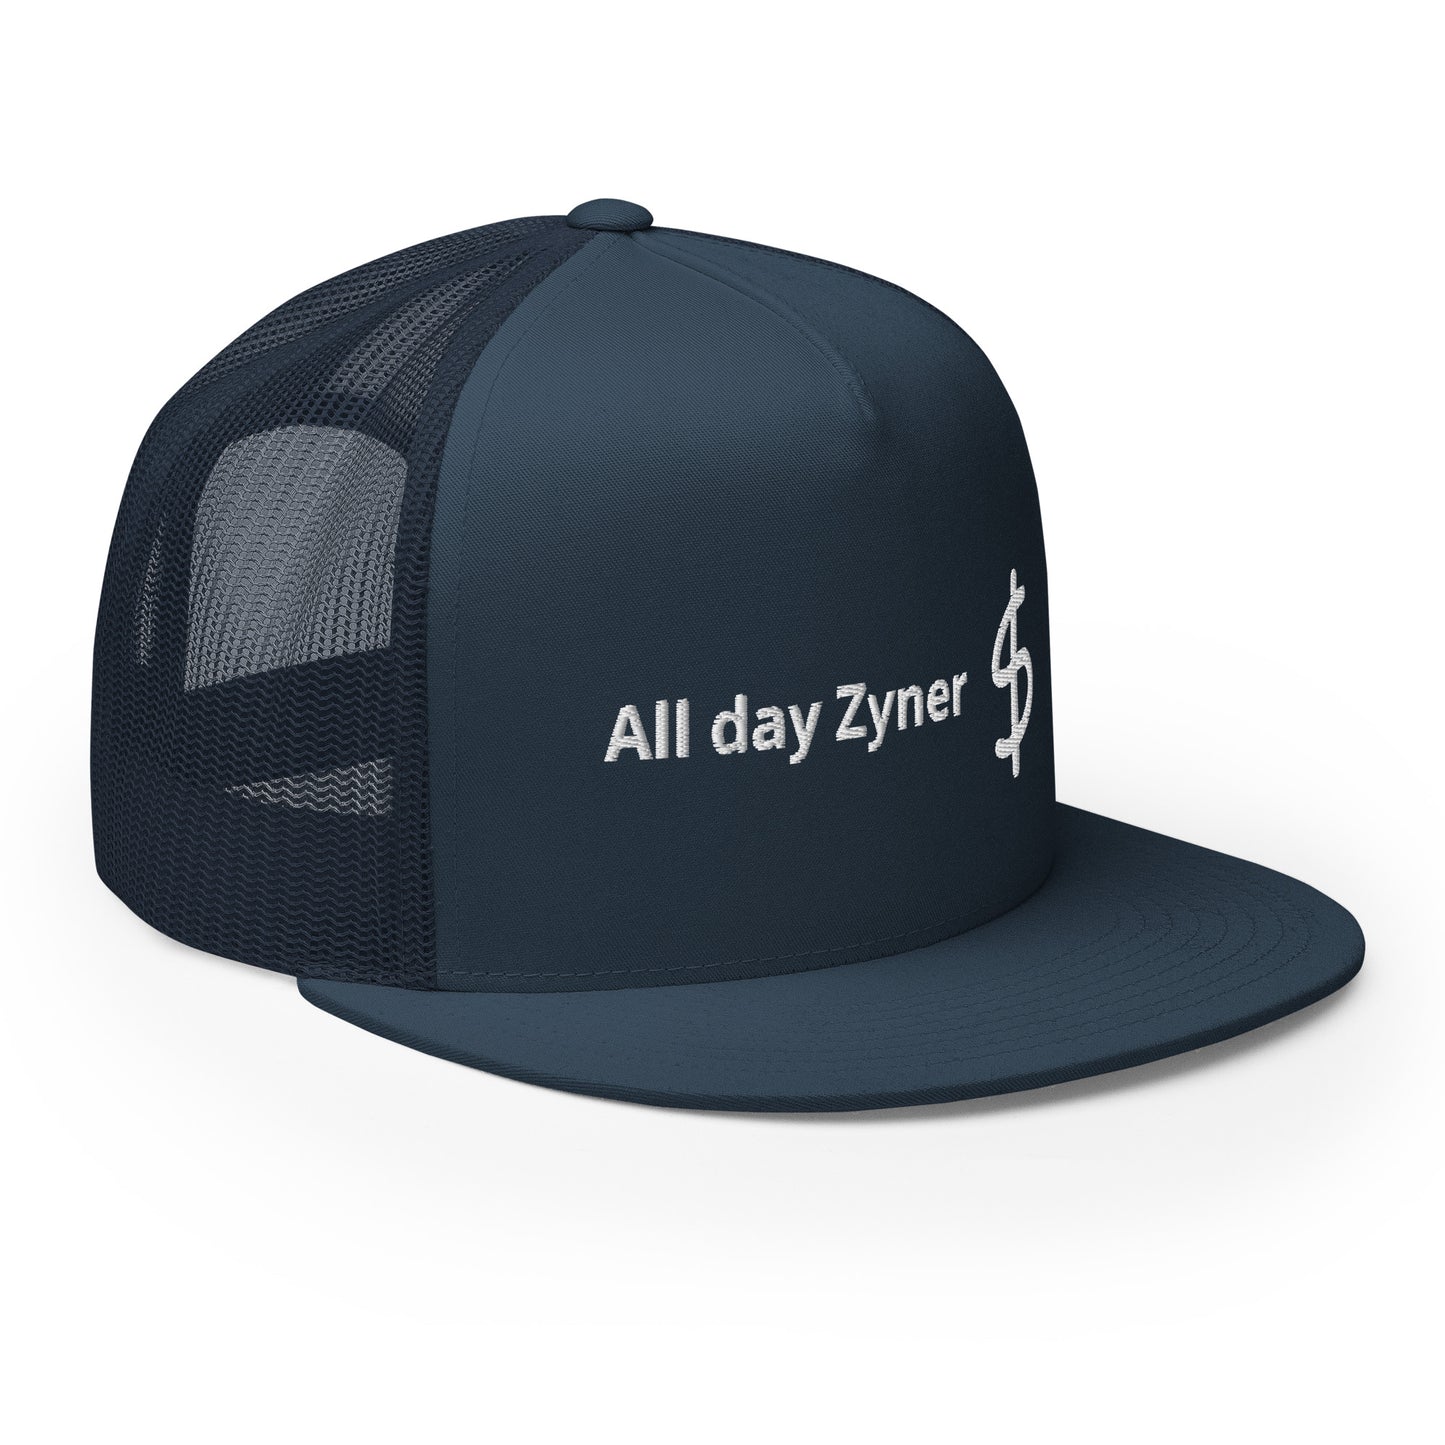 All day Zyner - Trucker Cap